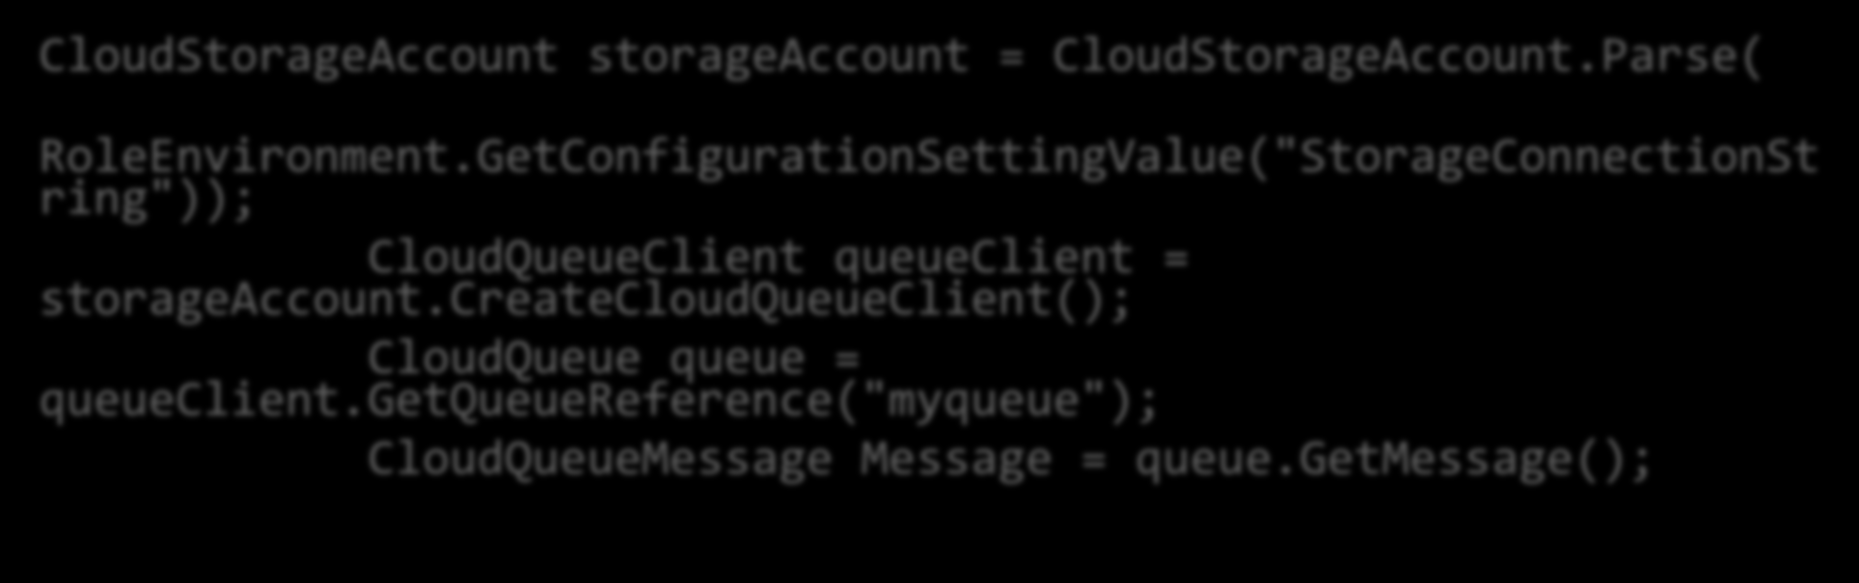 Obter uma mensagem CloudStorageAccount storageaccount = CloudStorageAccount.Parse( RoleEnvironment.